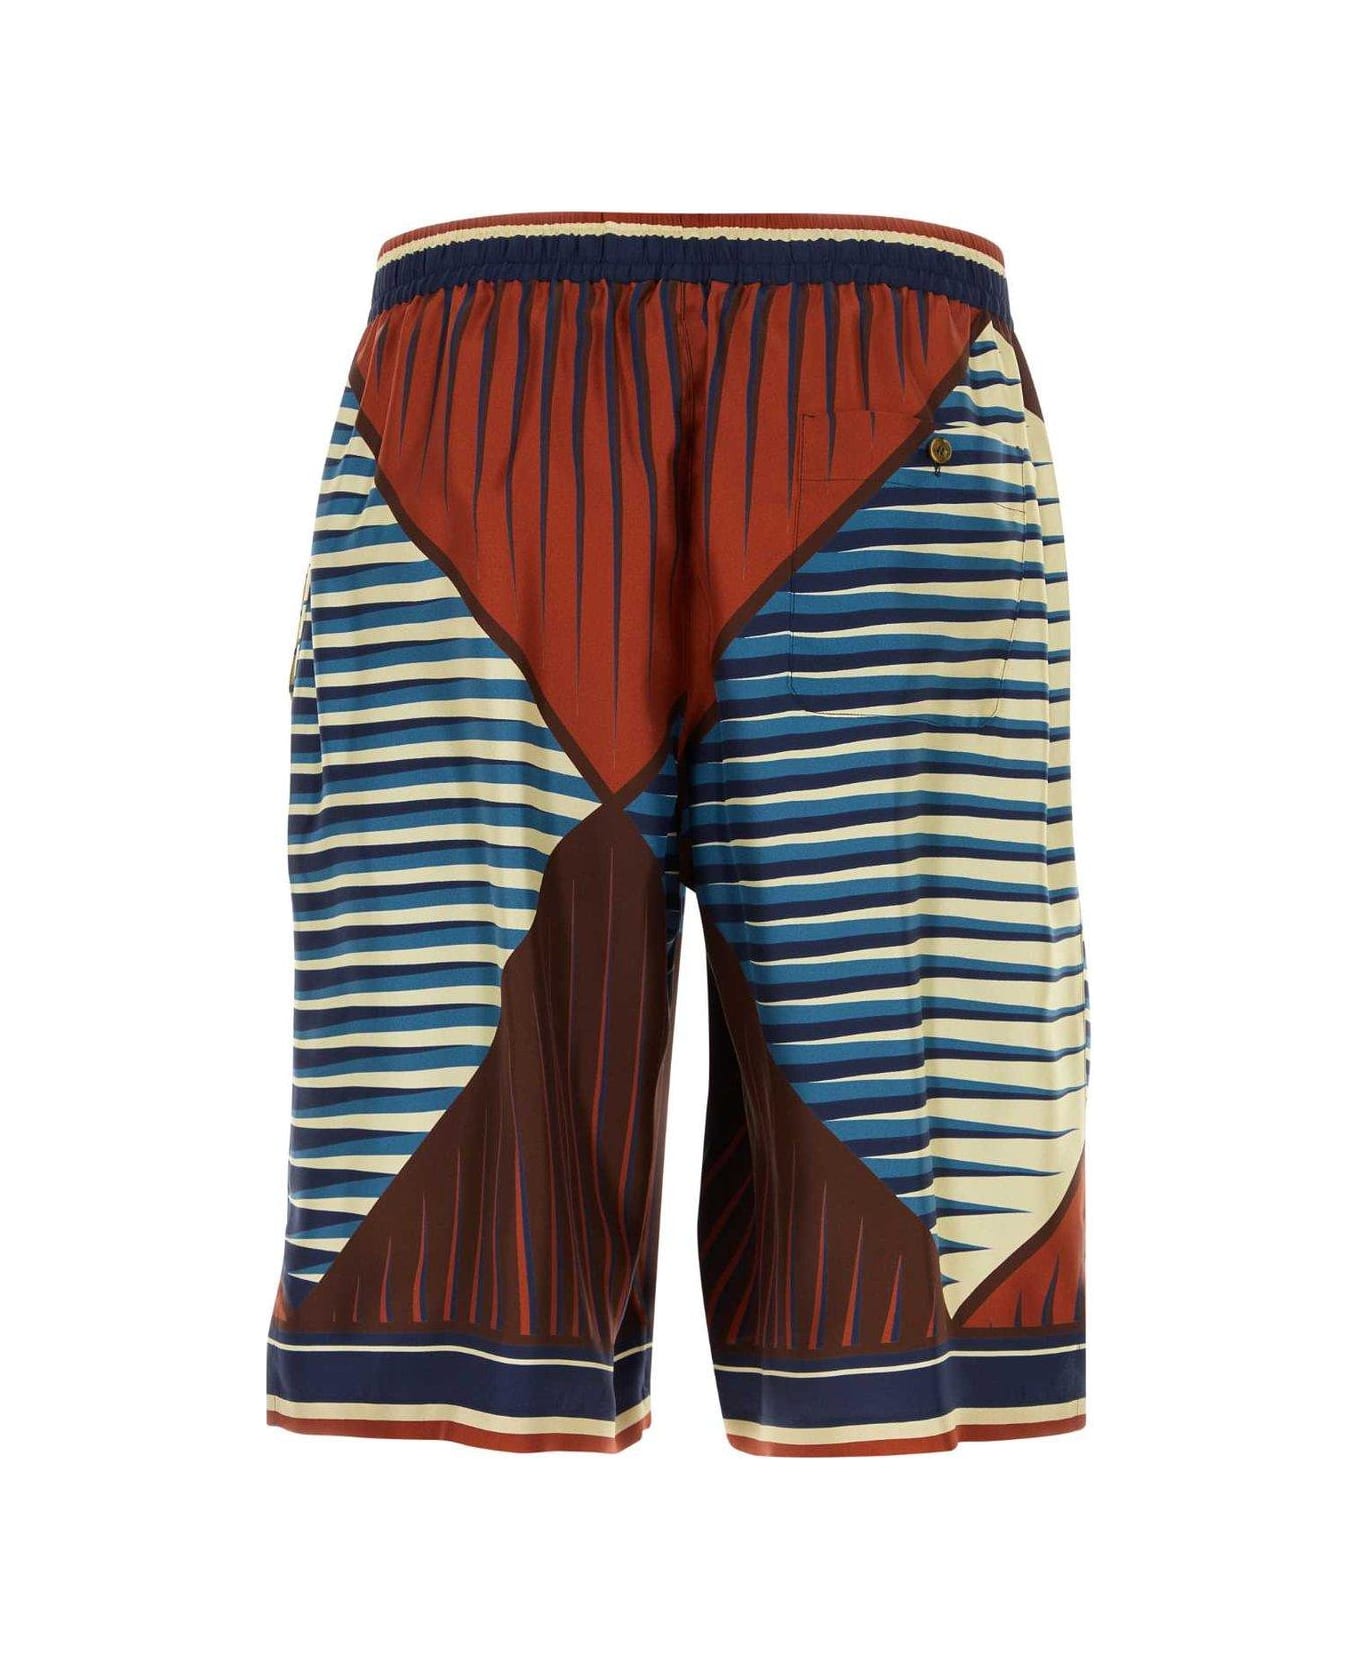 Dolce & Gabbana Bermuda Shorts - LUSSO